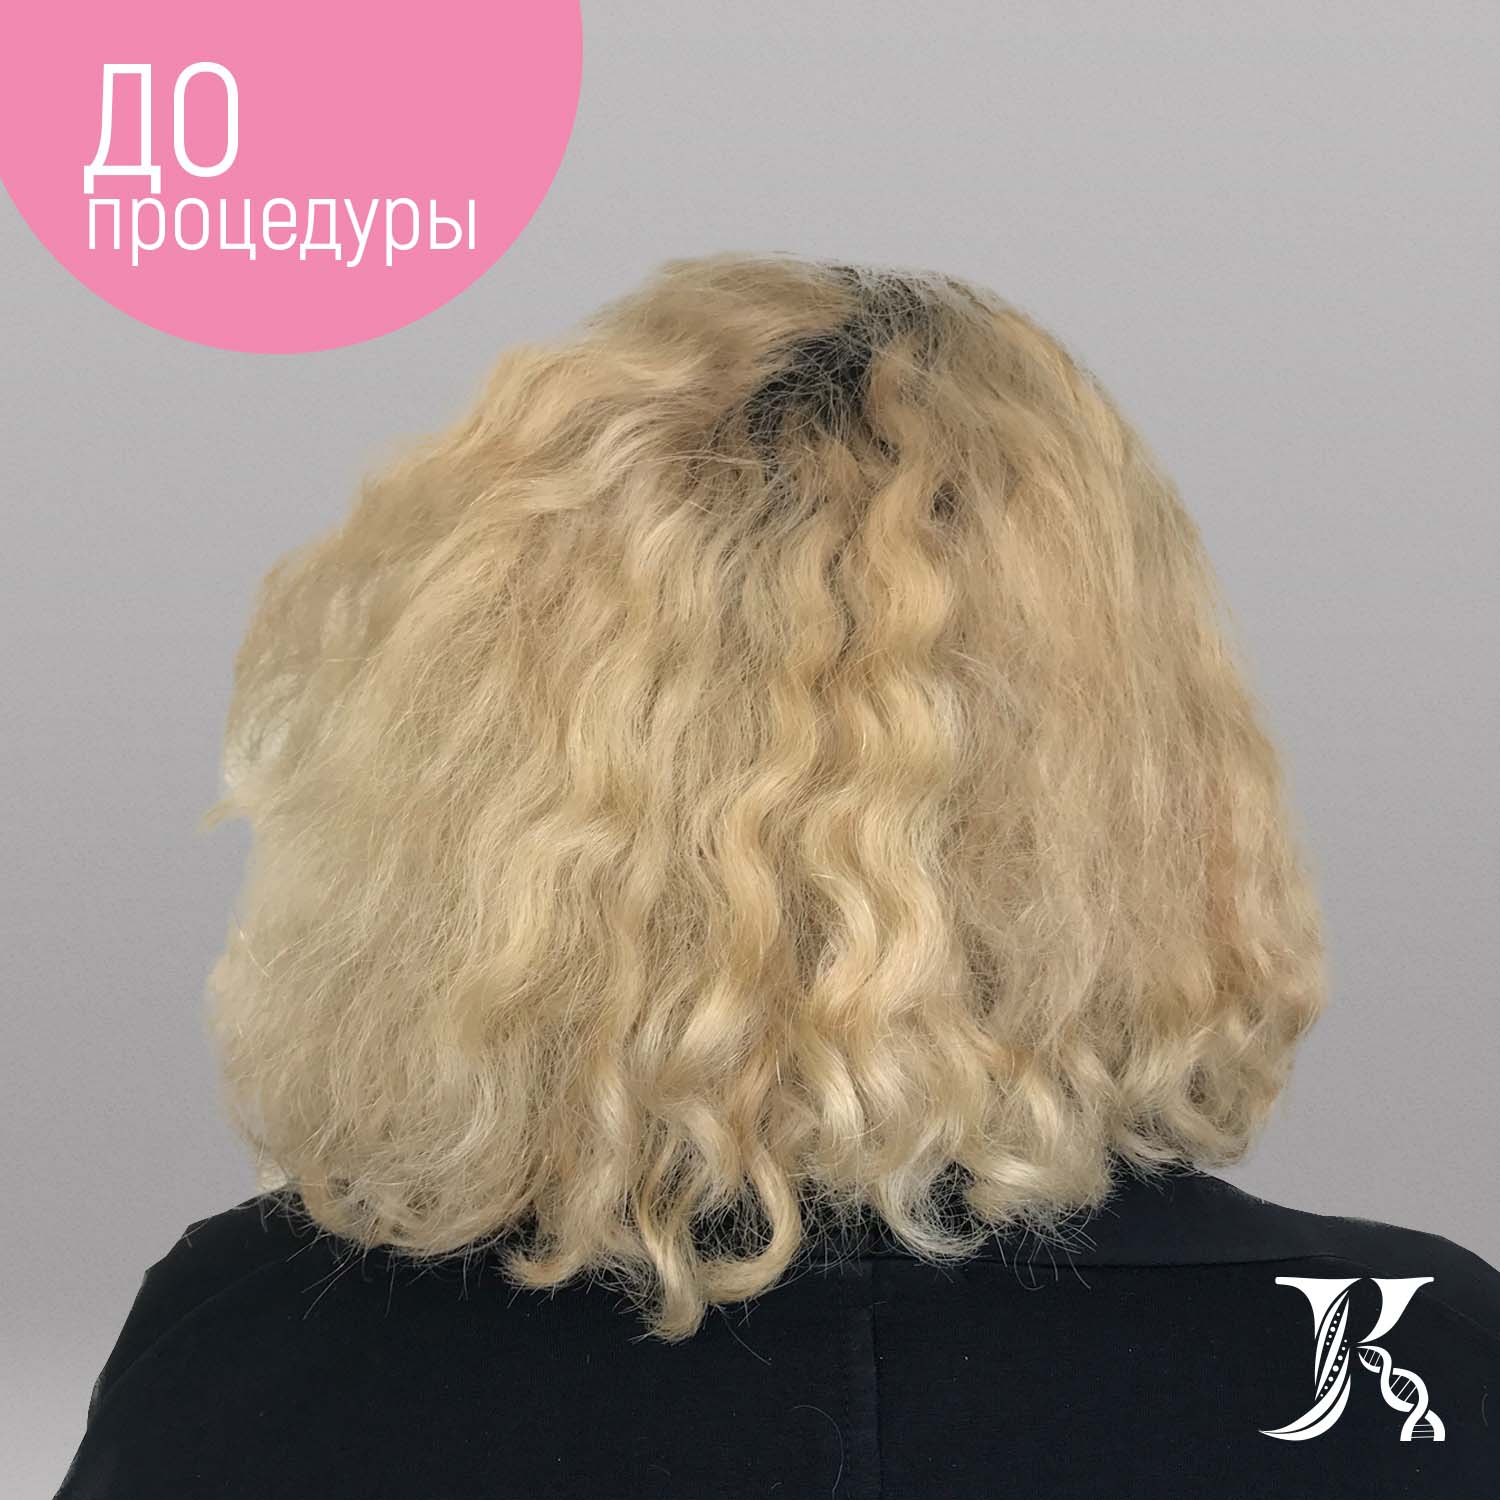 Ботокс для разглаживания волос с сохранением объёма JKeratin BotoHair Bixy, 150 мл